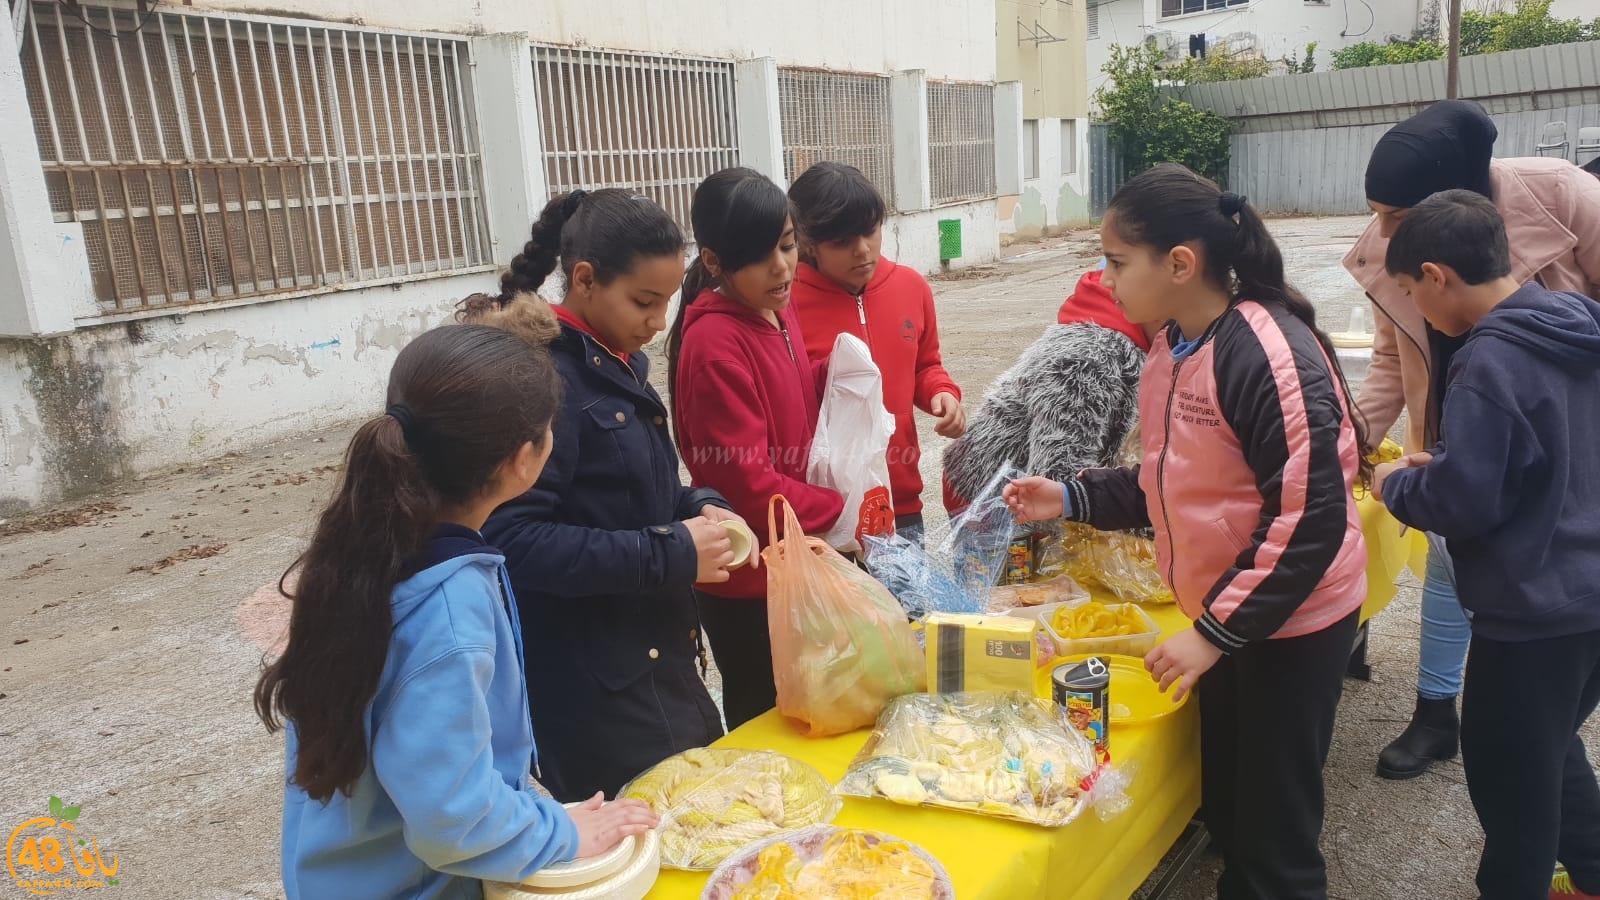 فيديو: فعاليات التغذية السليمة في مدرسة الراشدية بمدينة اللد